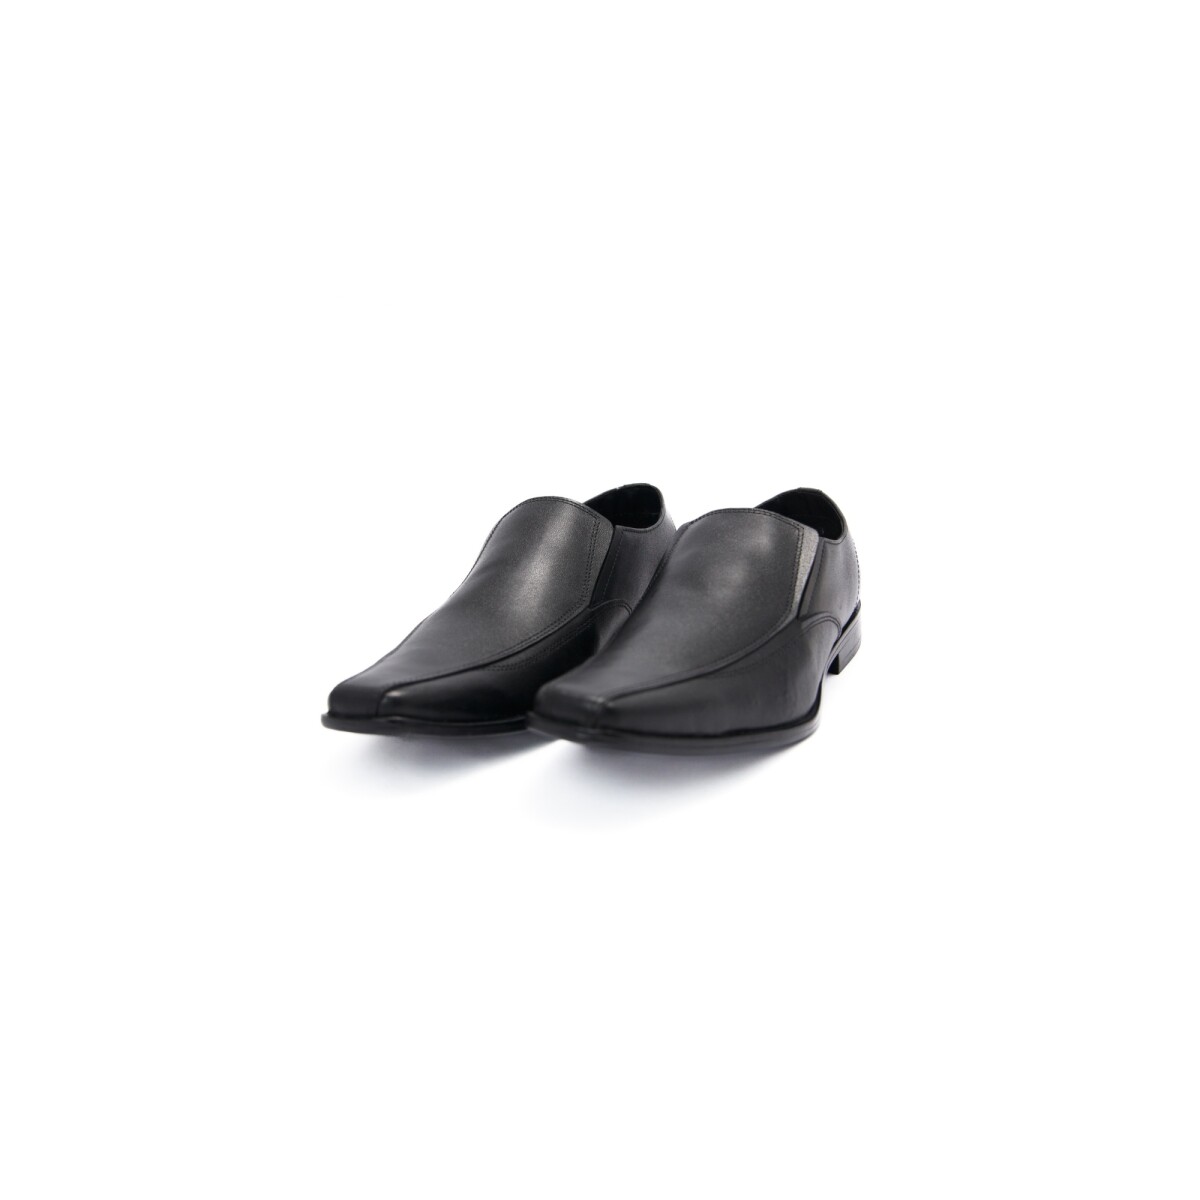 Zapatos Florenzi 3682 Negro S/Cordones - NEGRO 